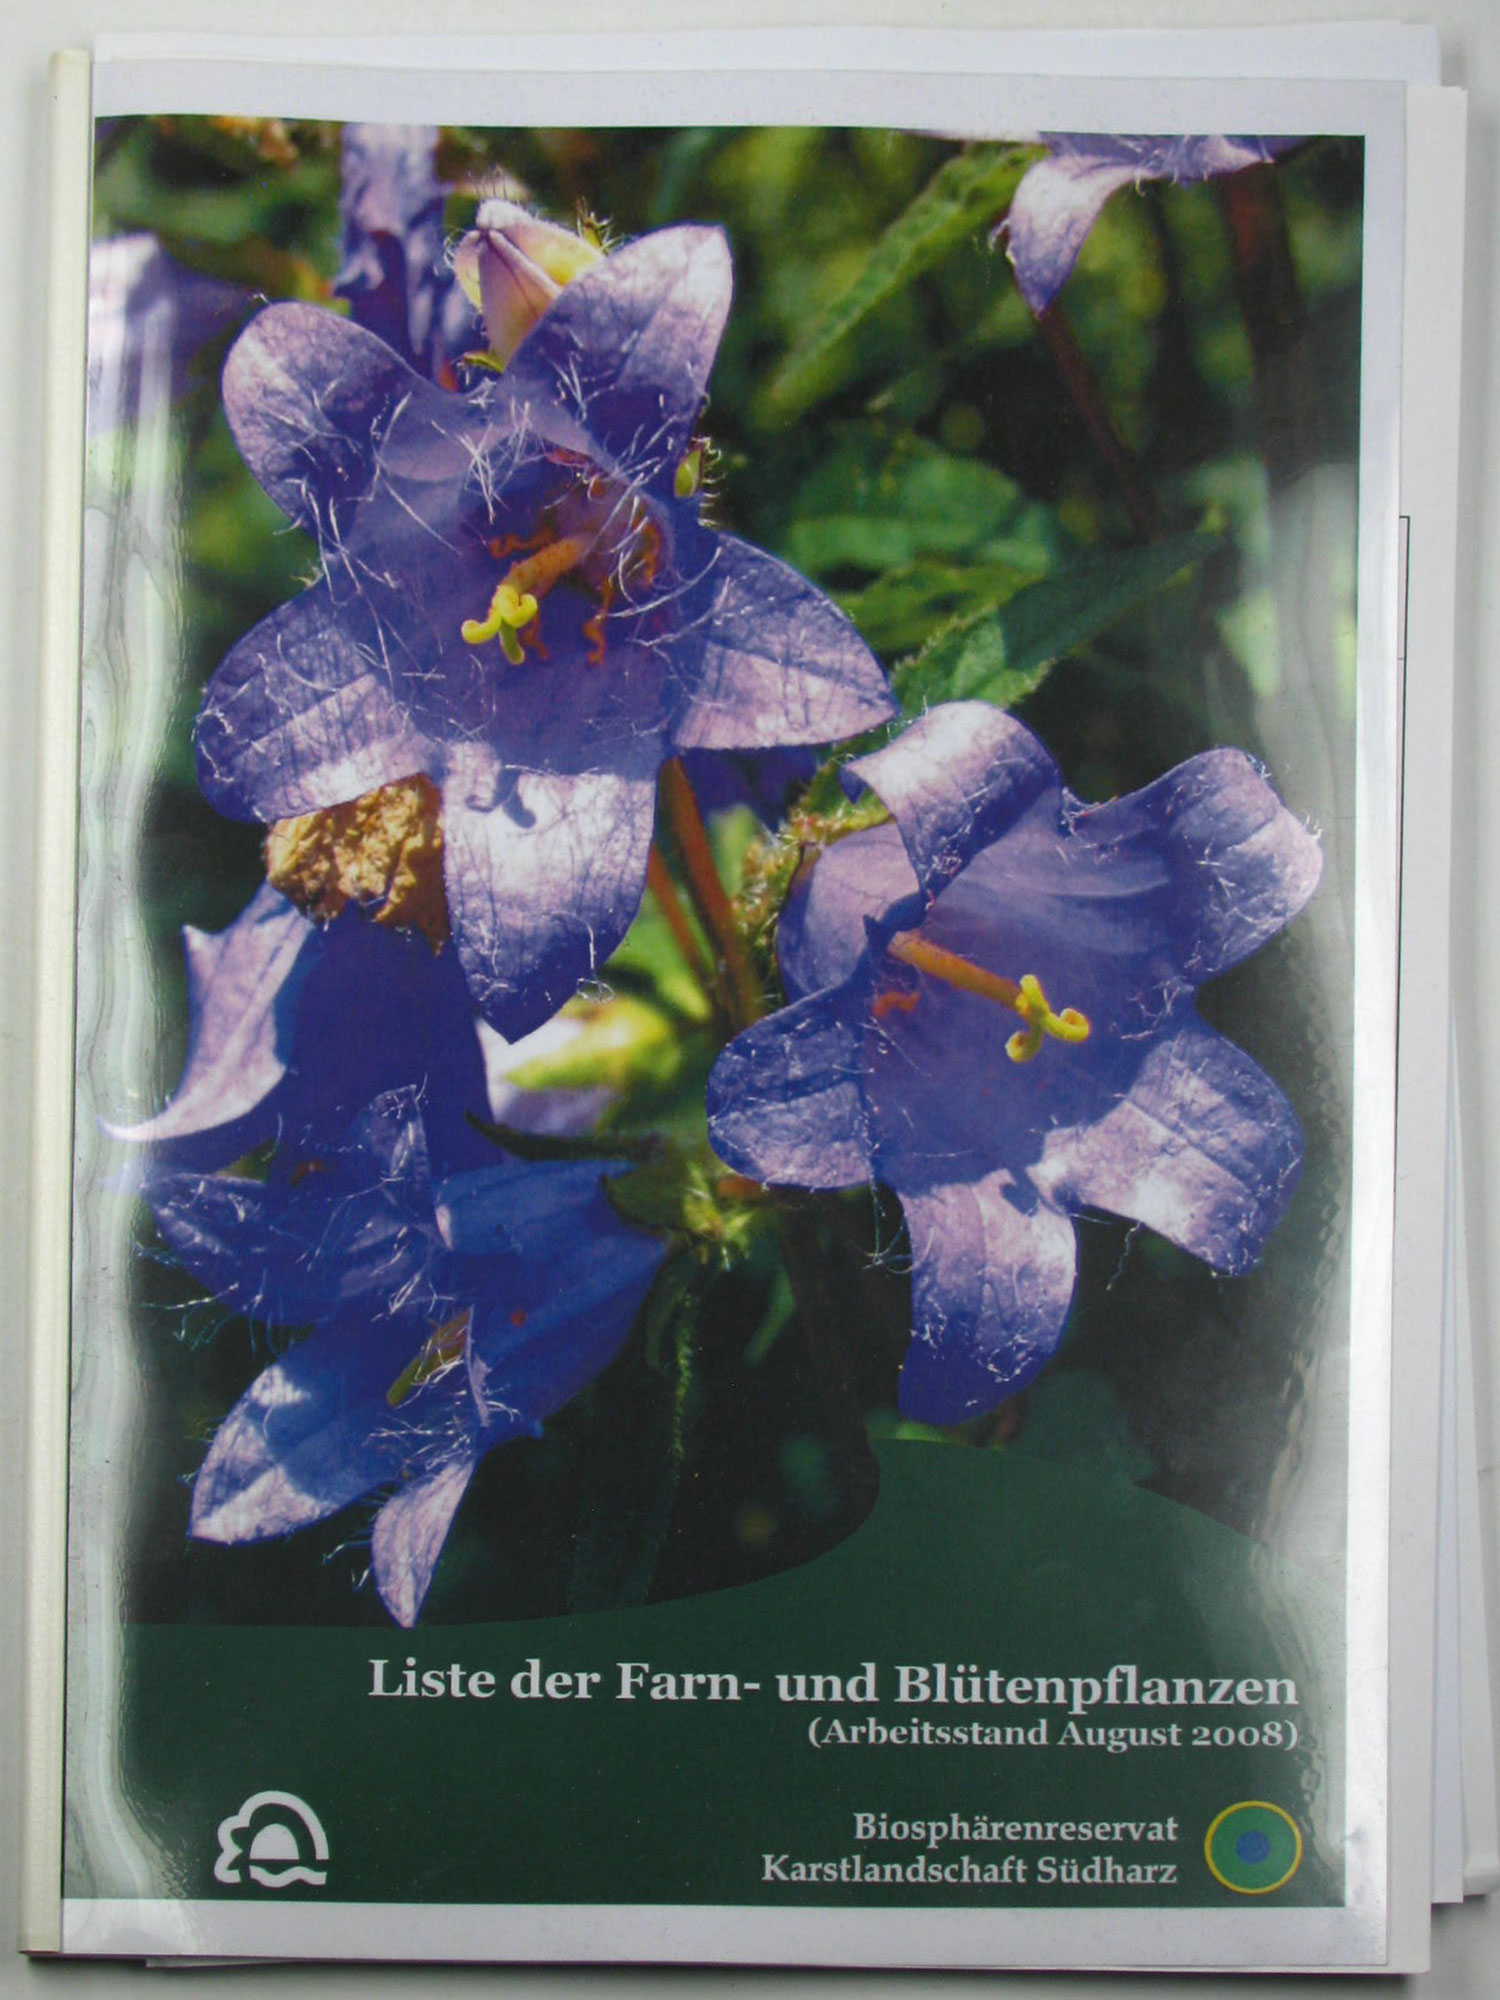 Hoch, A.:  Liste der Farn- und Blütenpflanzen im Biosphärenreservat Karstlandschaft Südharz i. G. 